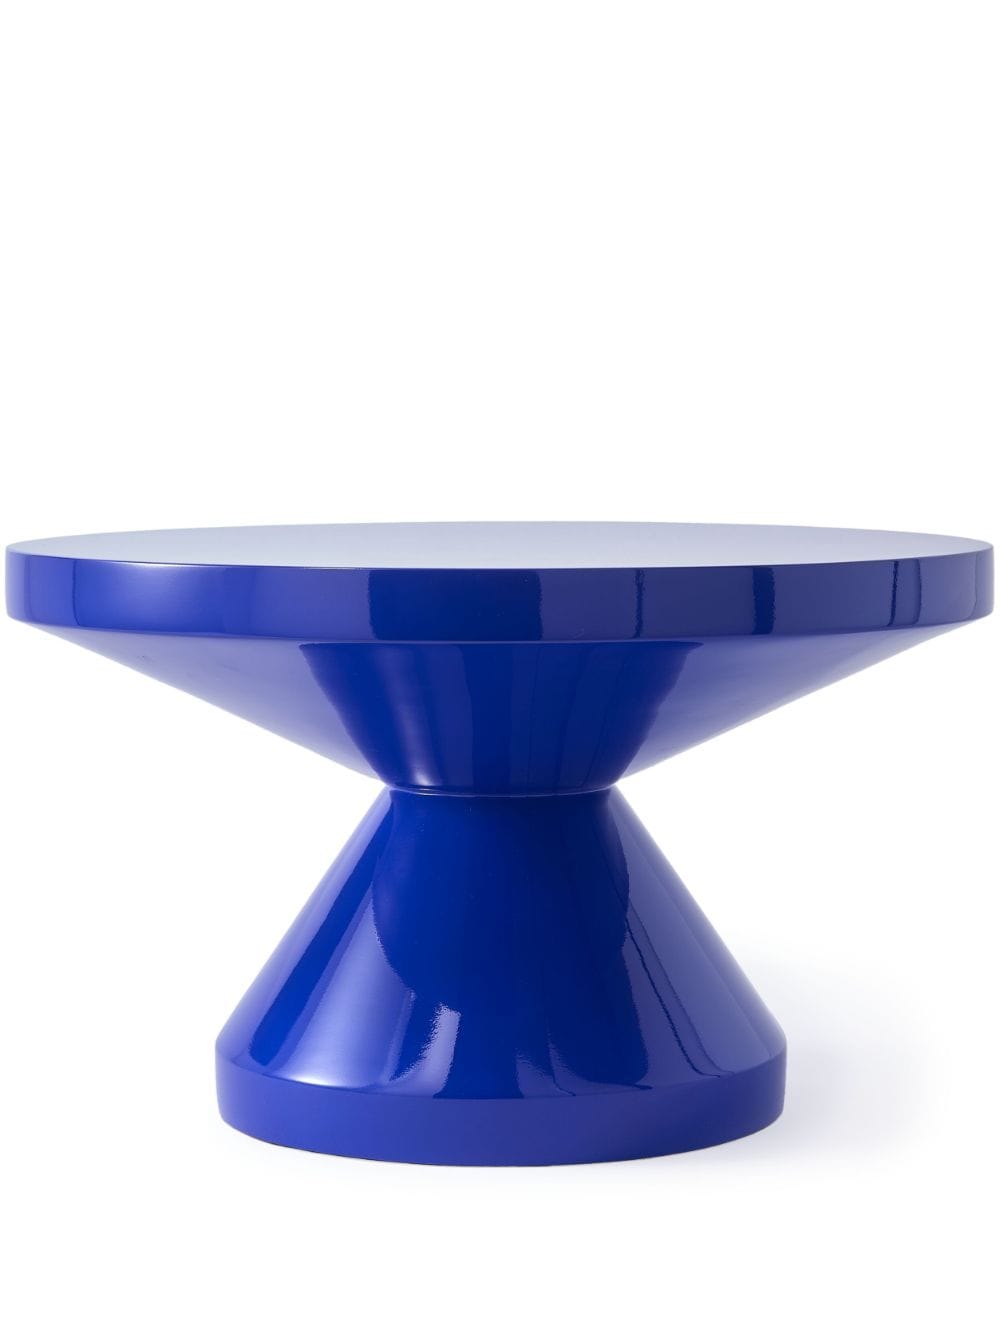 POLSPOTTEN Zig Zag coffee table (35cm x 60cm) - Blue von POLSPOTTEN